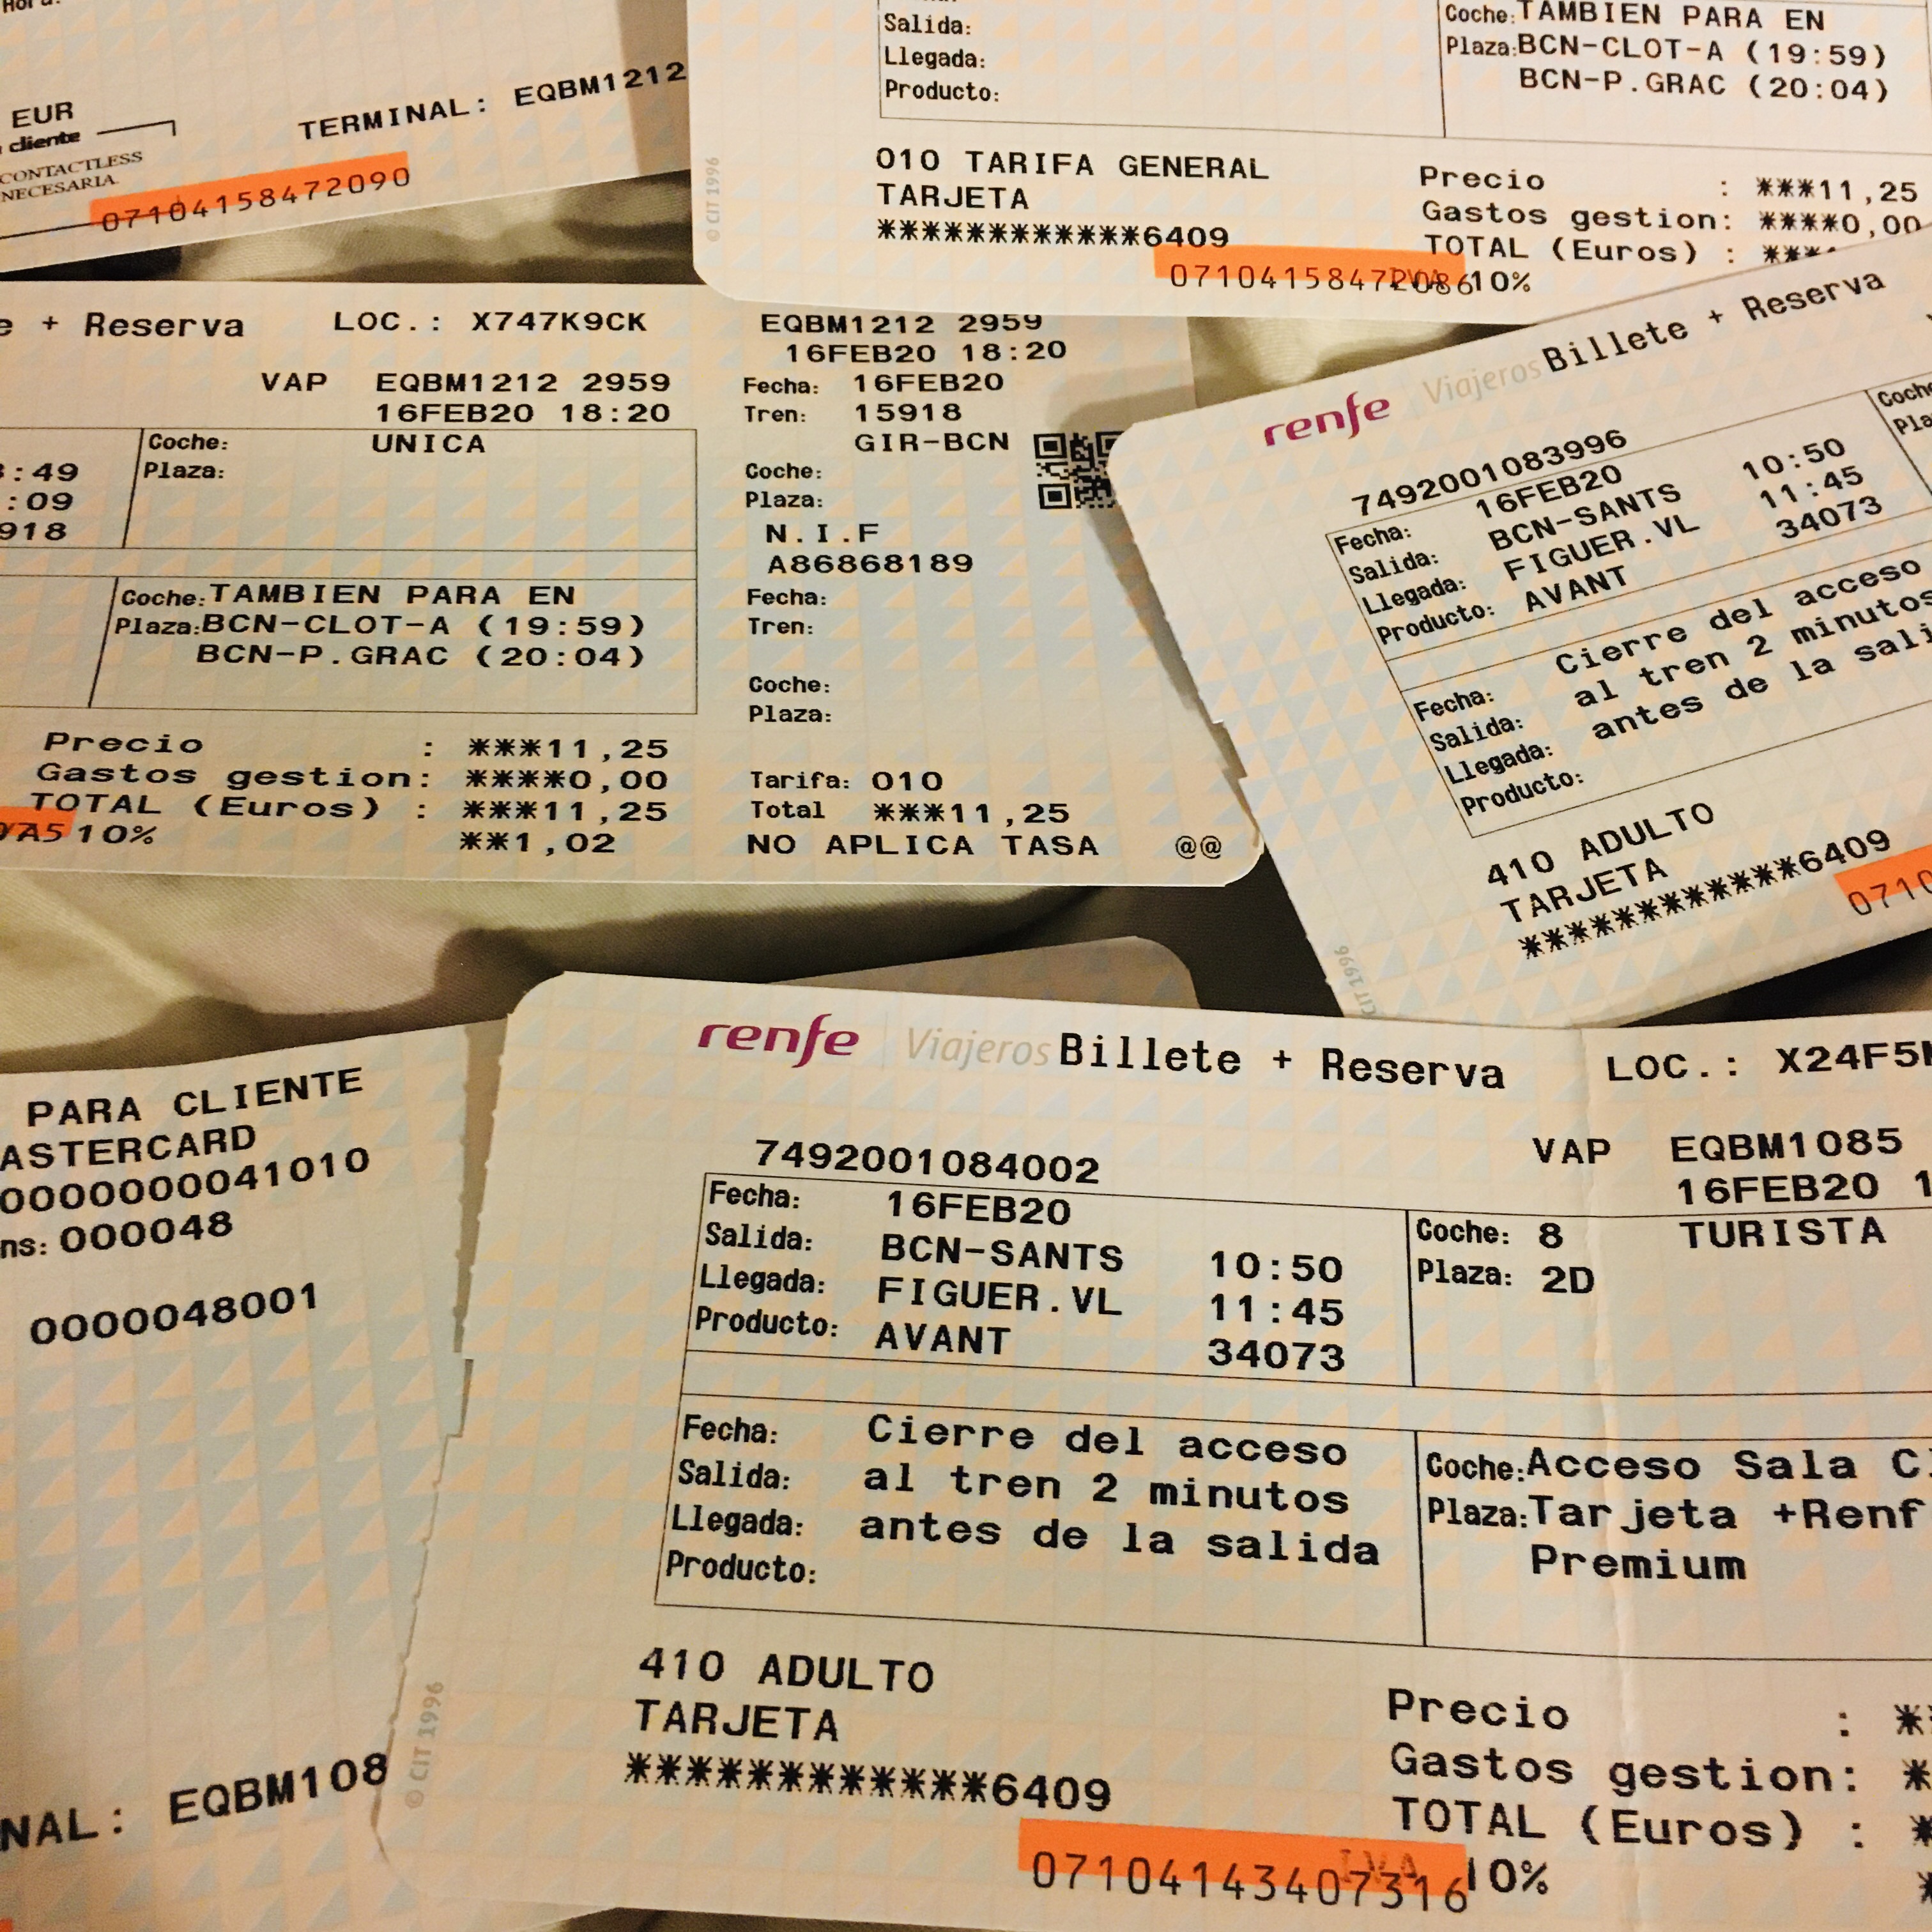 train renfe tickets in spain barcelona,